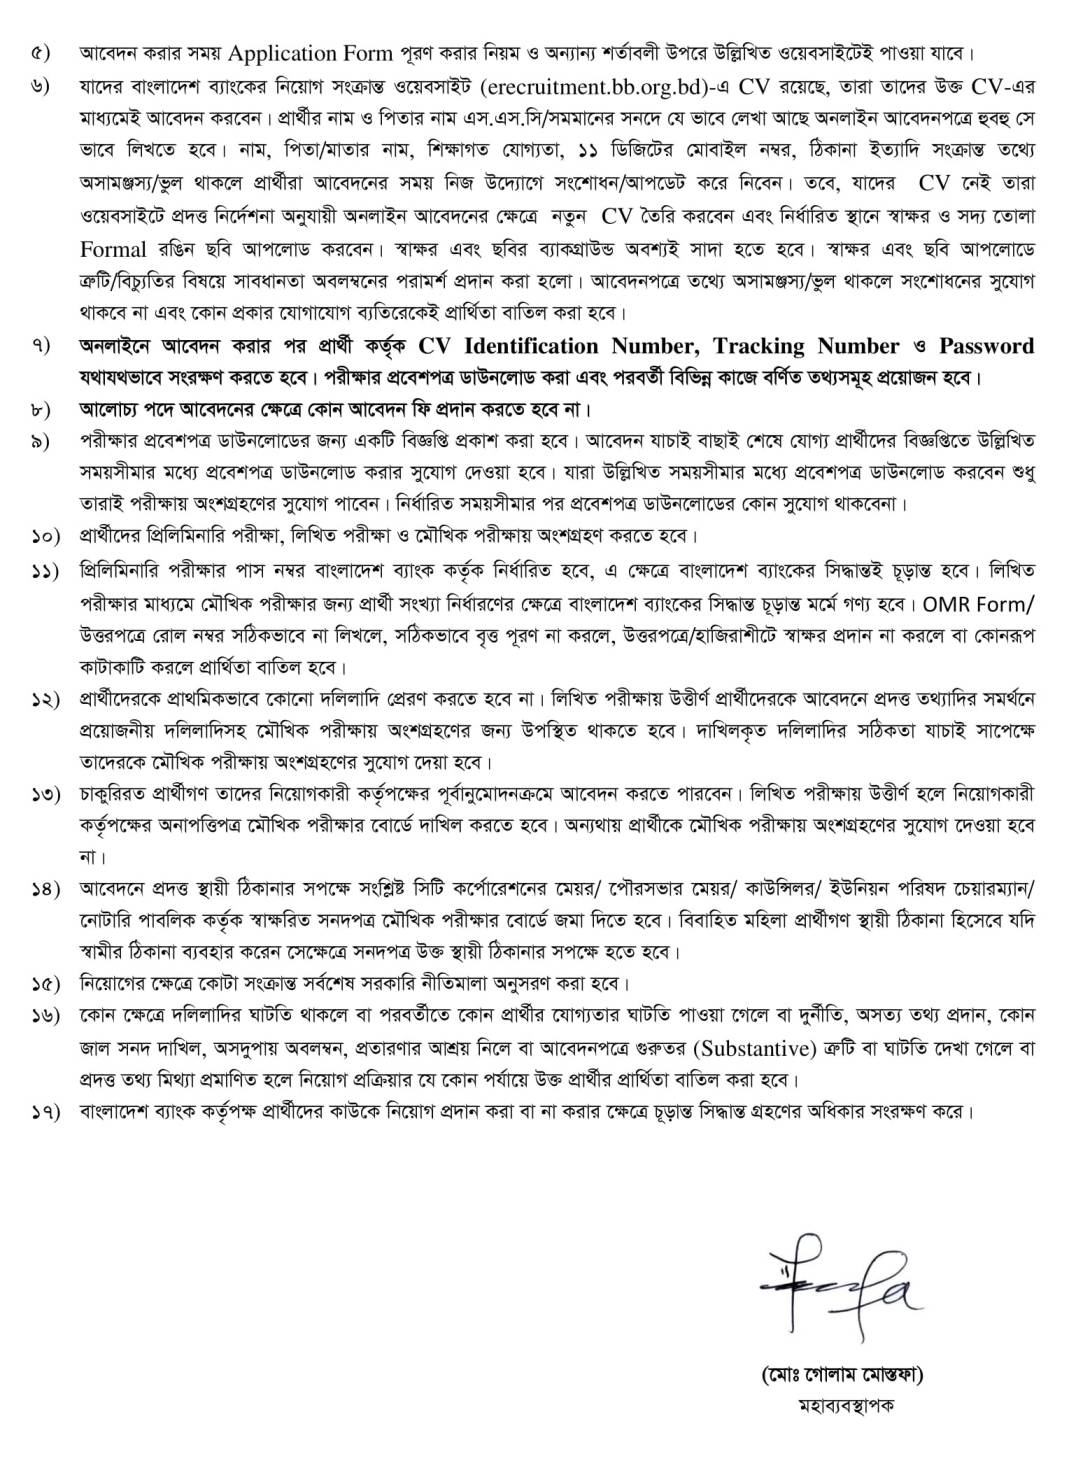 বাংলাদেশ ব্যাংকের চাকরির বিজ্ঞপ্তি ২০২২। Bangladesh Bank Job Circular 2022